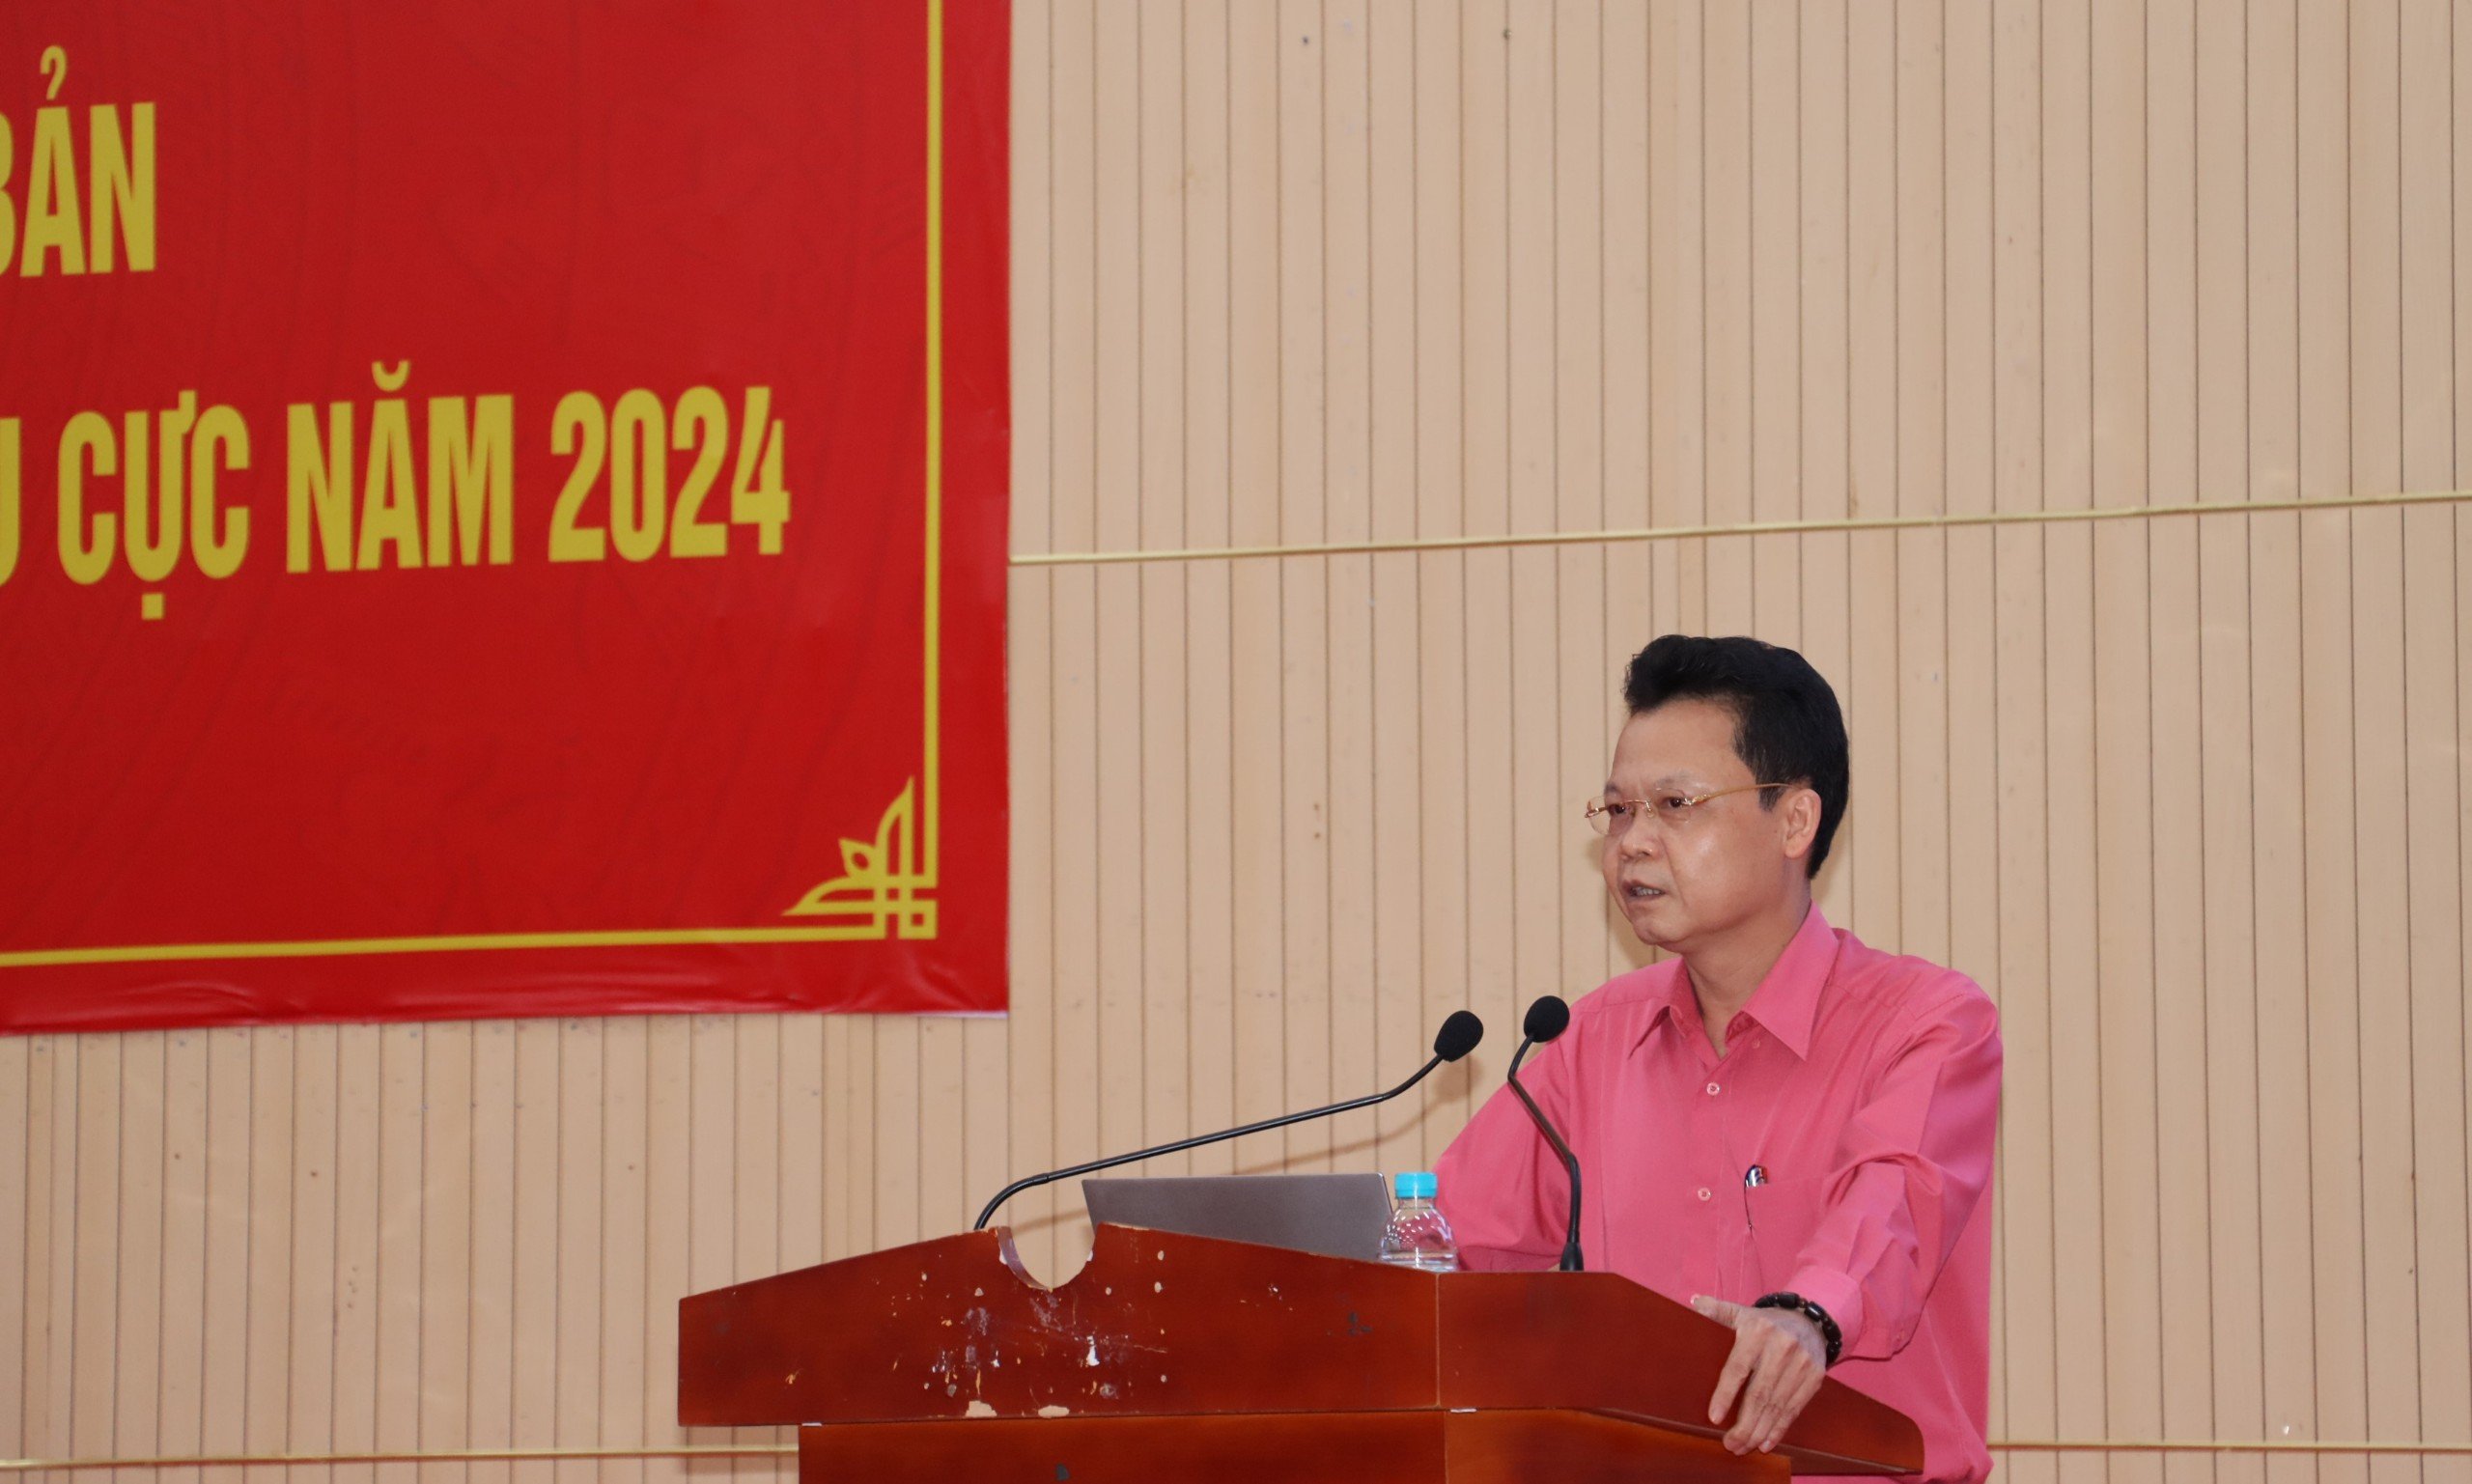 Tiến sỹ Trịnh Thăng Quyết, Phó Vụ trưởng Vụ Địa phương III, Ban Nội chính Trung ương quán triệt và triển khai các chuyên đề tại Hội nghị